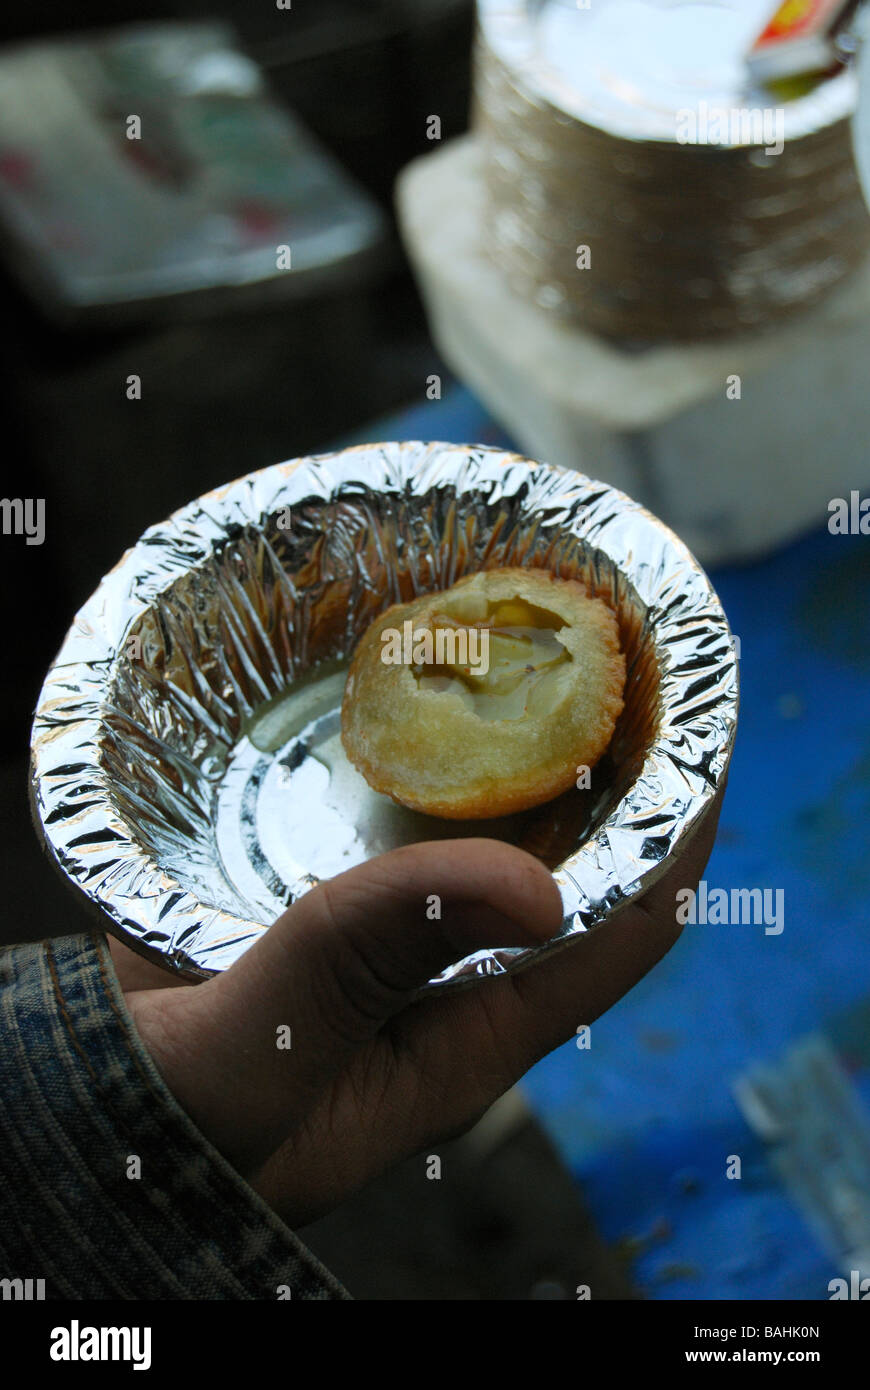 Panipuri est un creux, gonflée, rond de pâte avec une coquille croquante et c'est une rue populaire snack dans l'Inde Banque D'Images